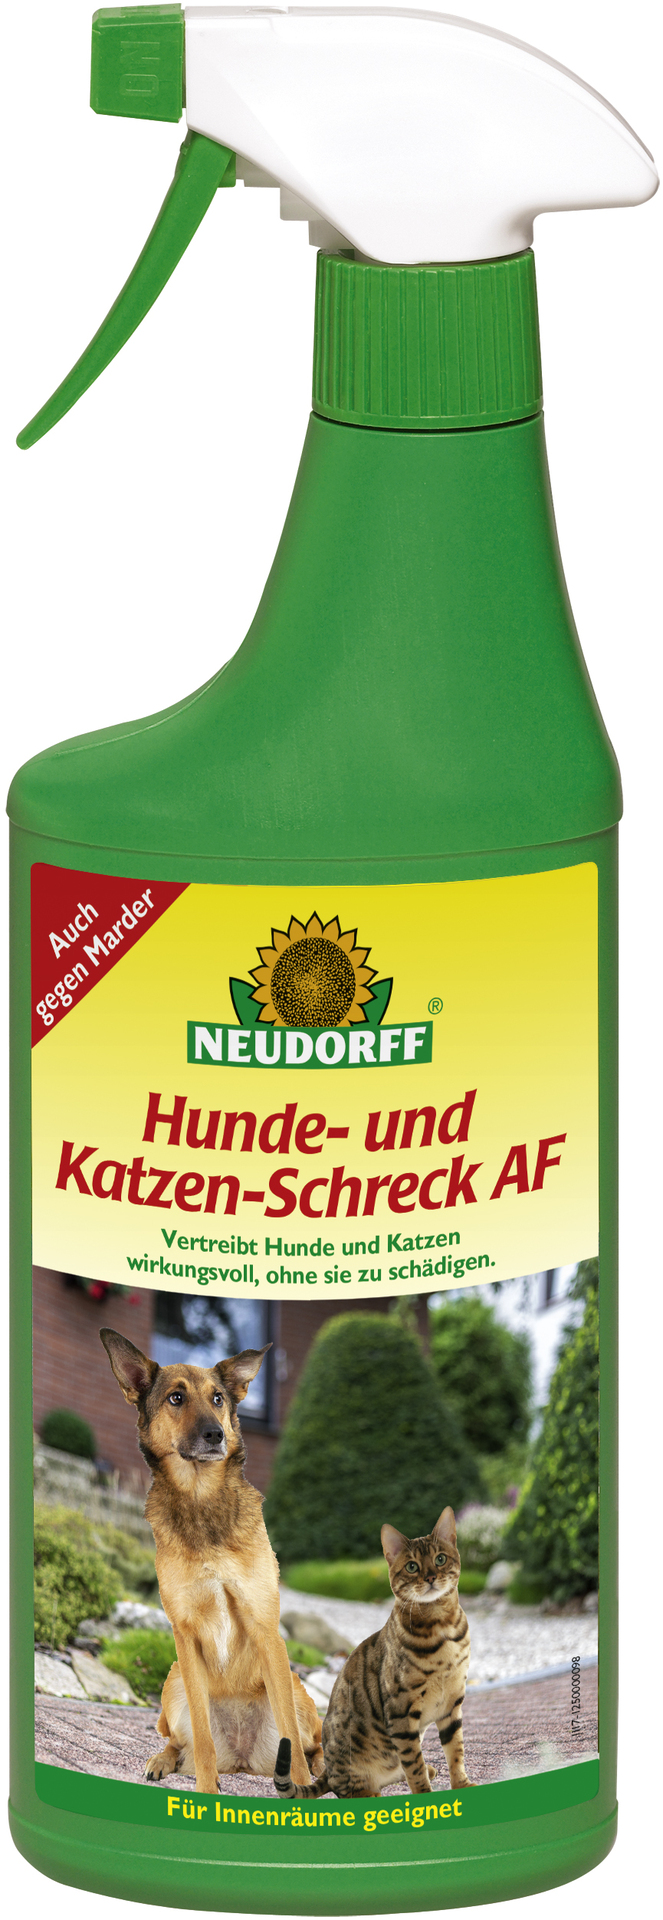 W. Neudorff GmbH KG Hunde- und Katzen-Schreck AF